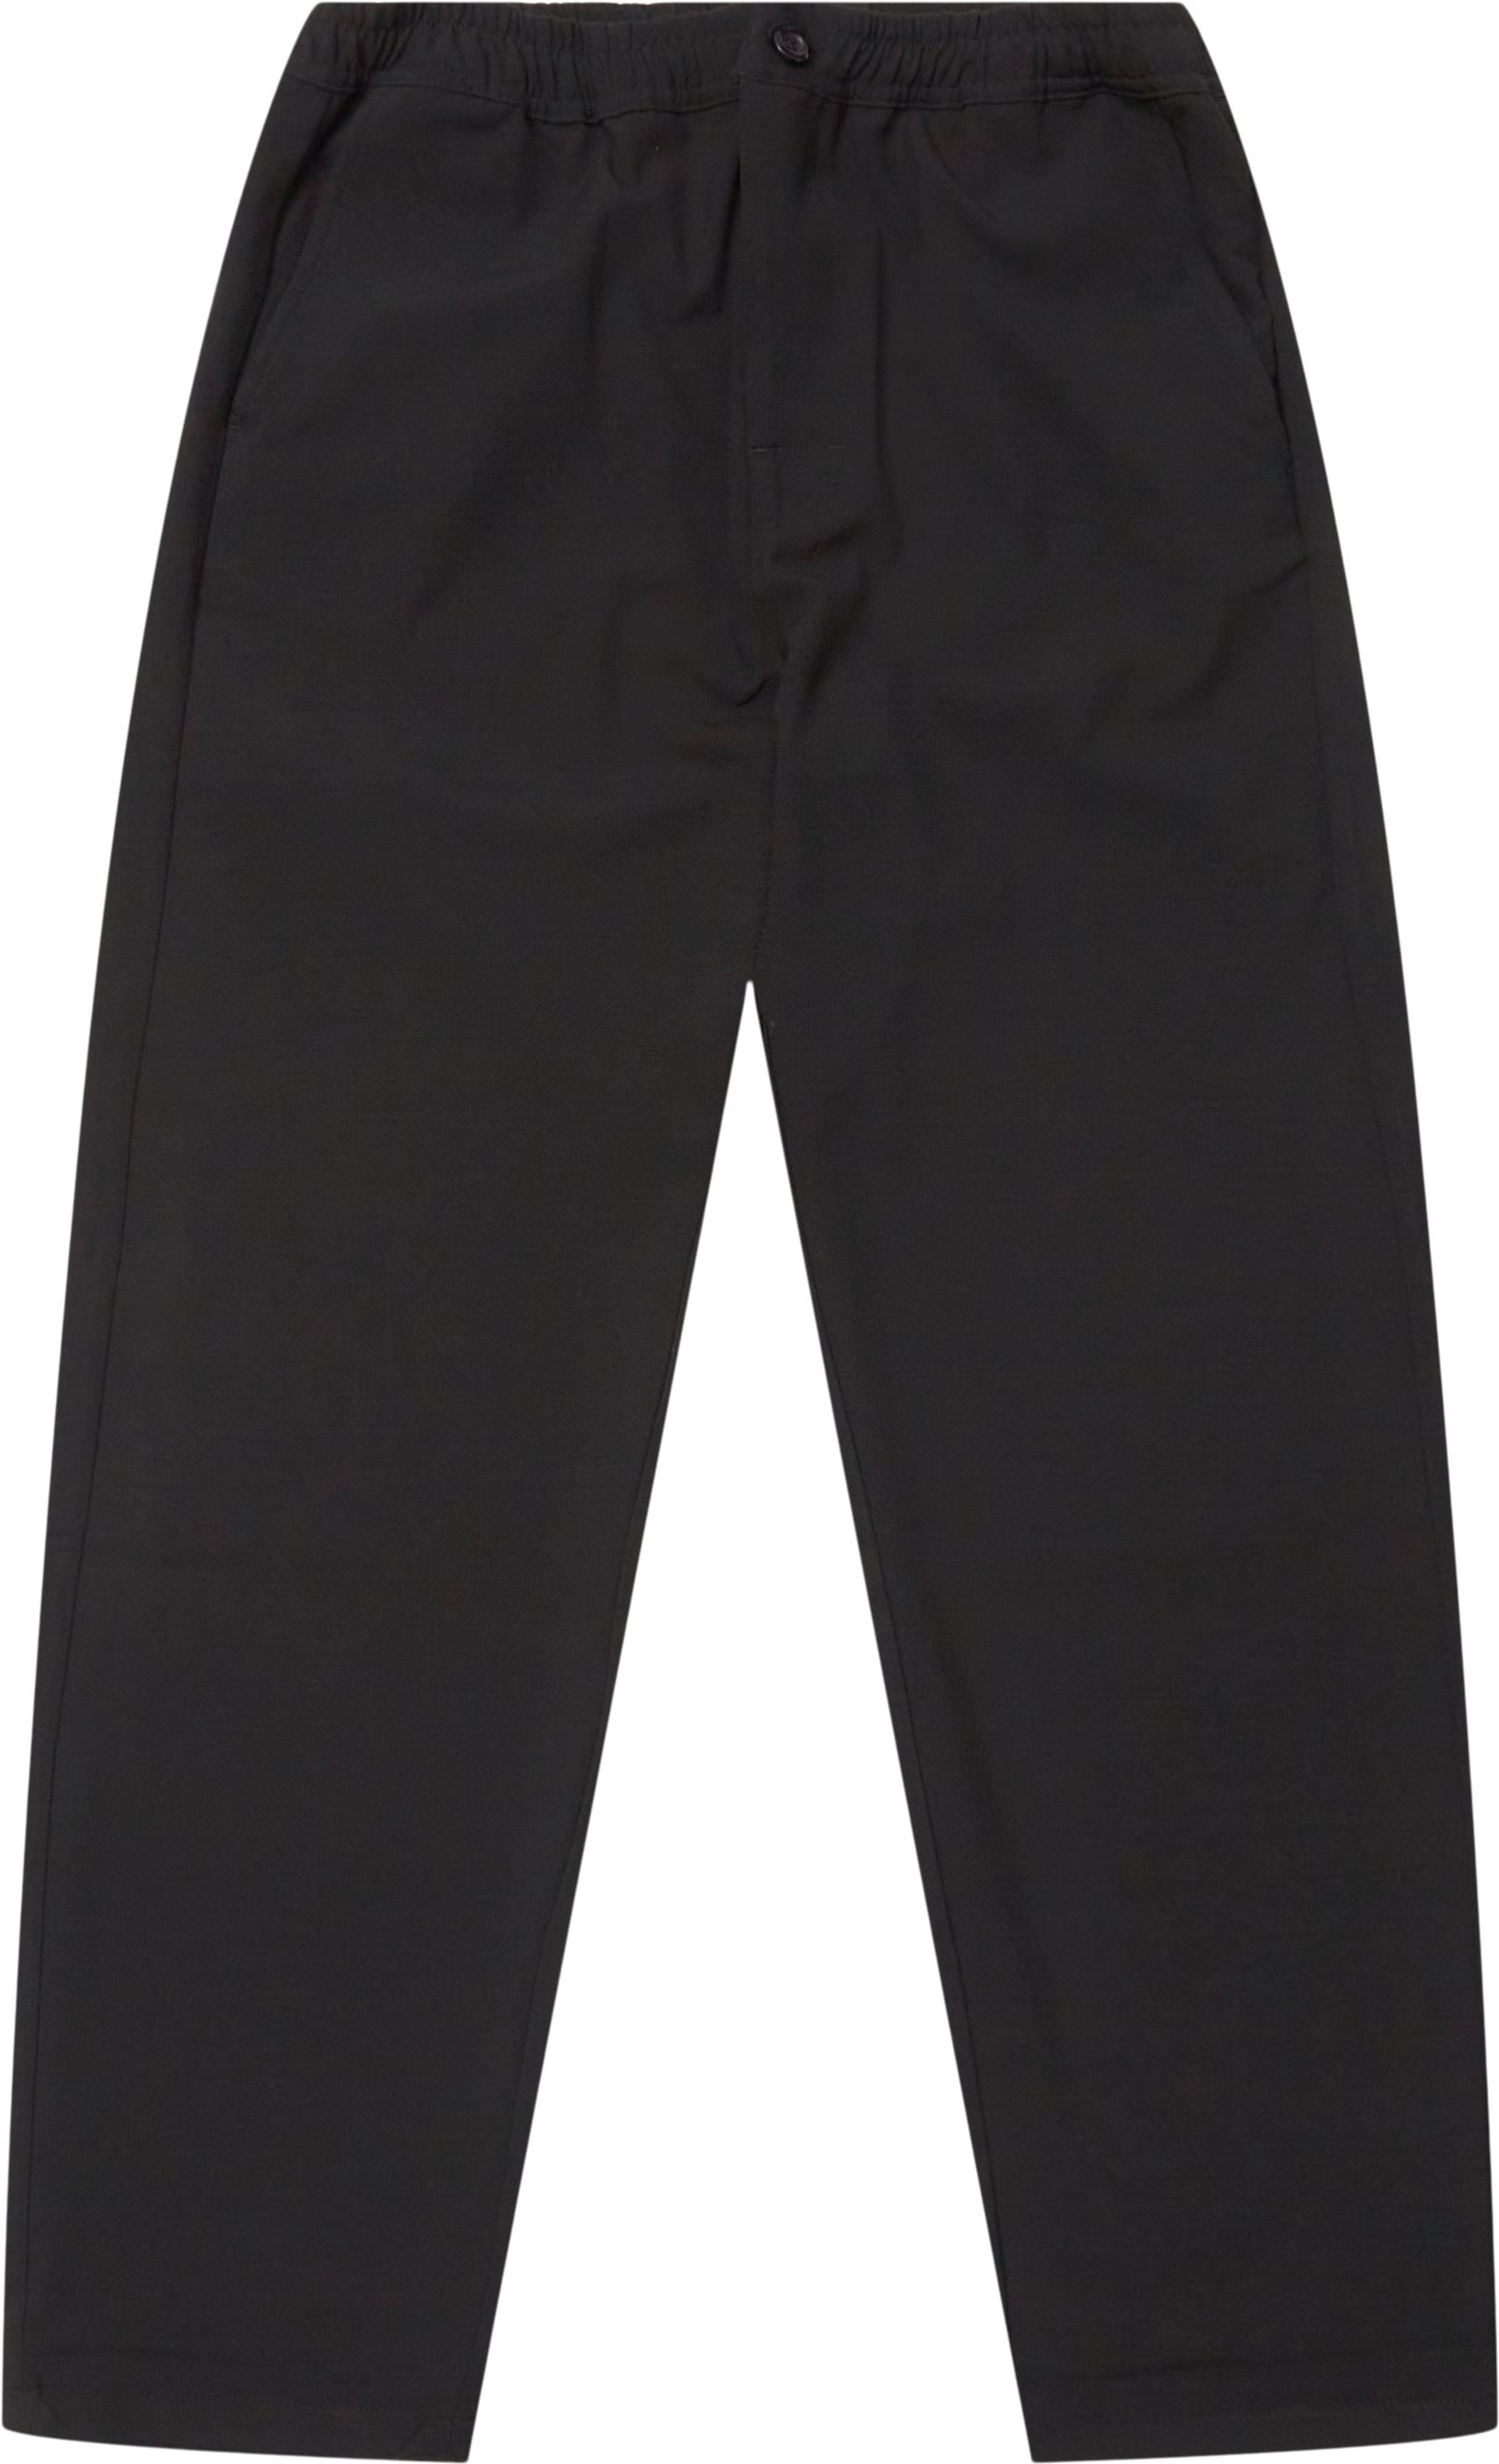 Utah Pants - Trousers - Regular fit - Black